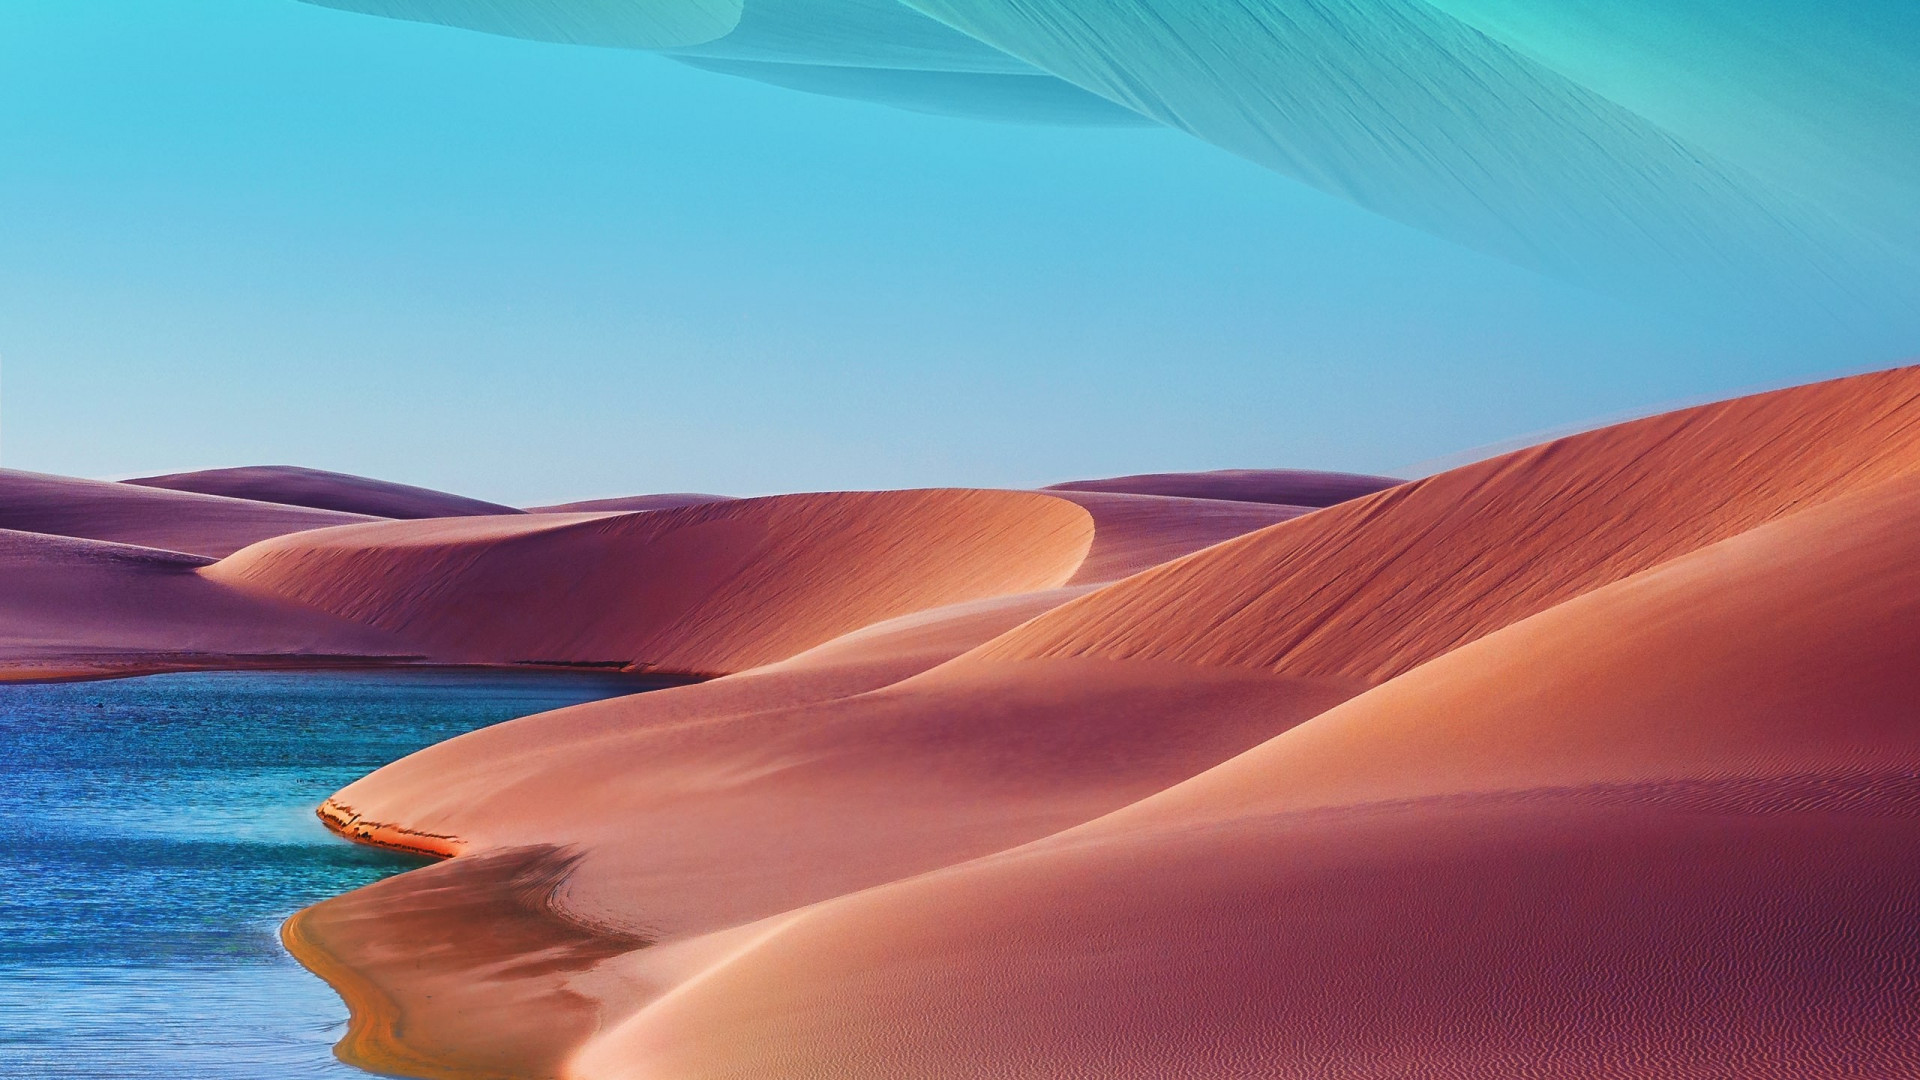 Desert dunes, lake, blue sky, hot day wallpaper 1920x1080